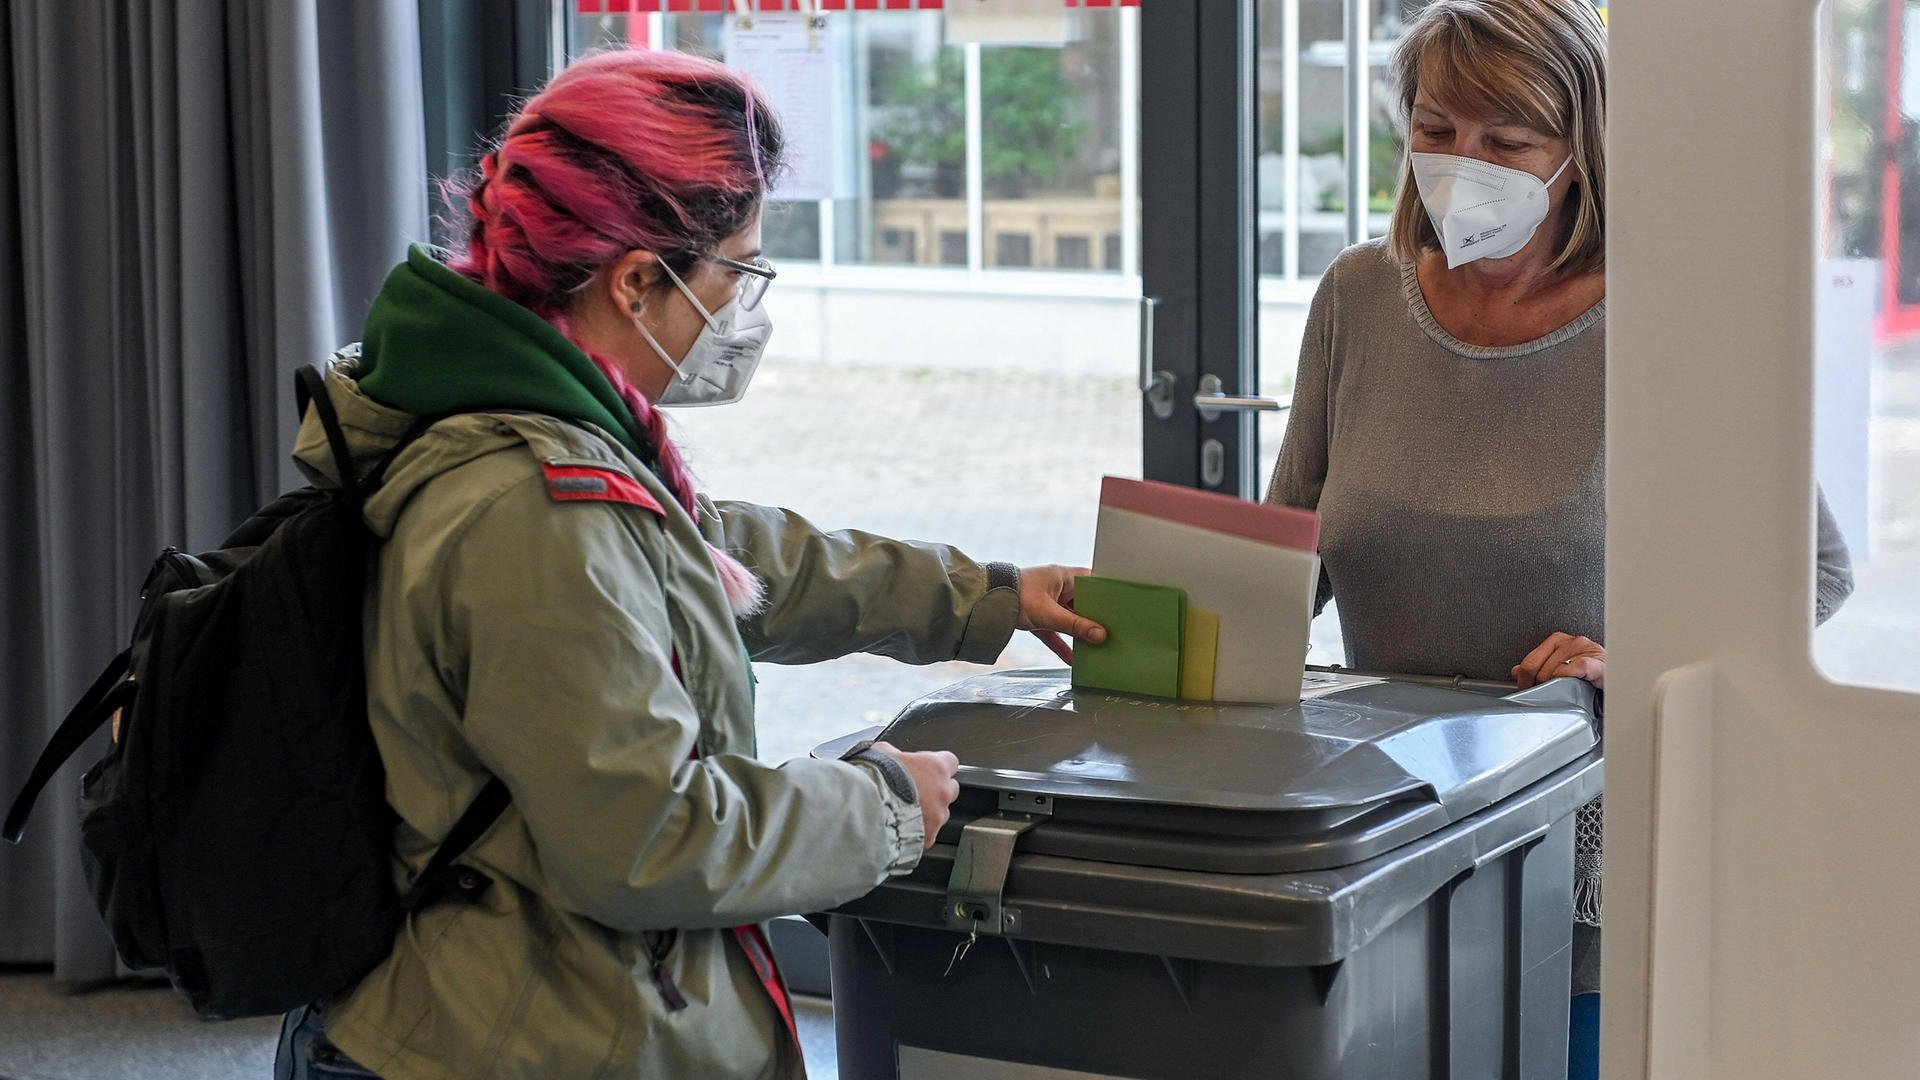 Für Impffortschritt: FDP-Politiker regt Impfungen an Wahllokalen an